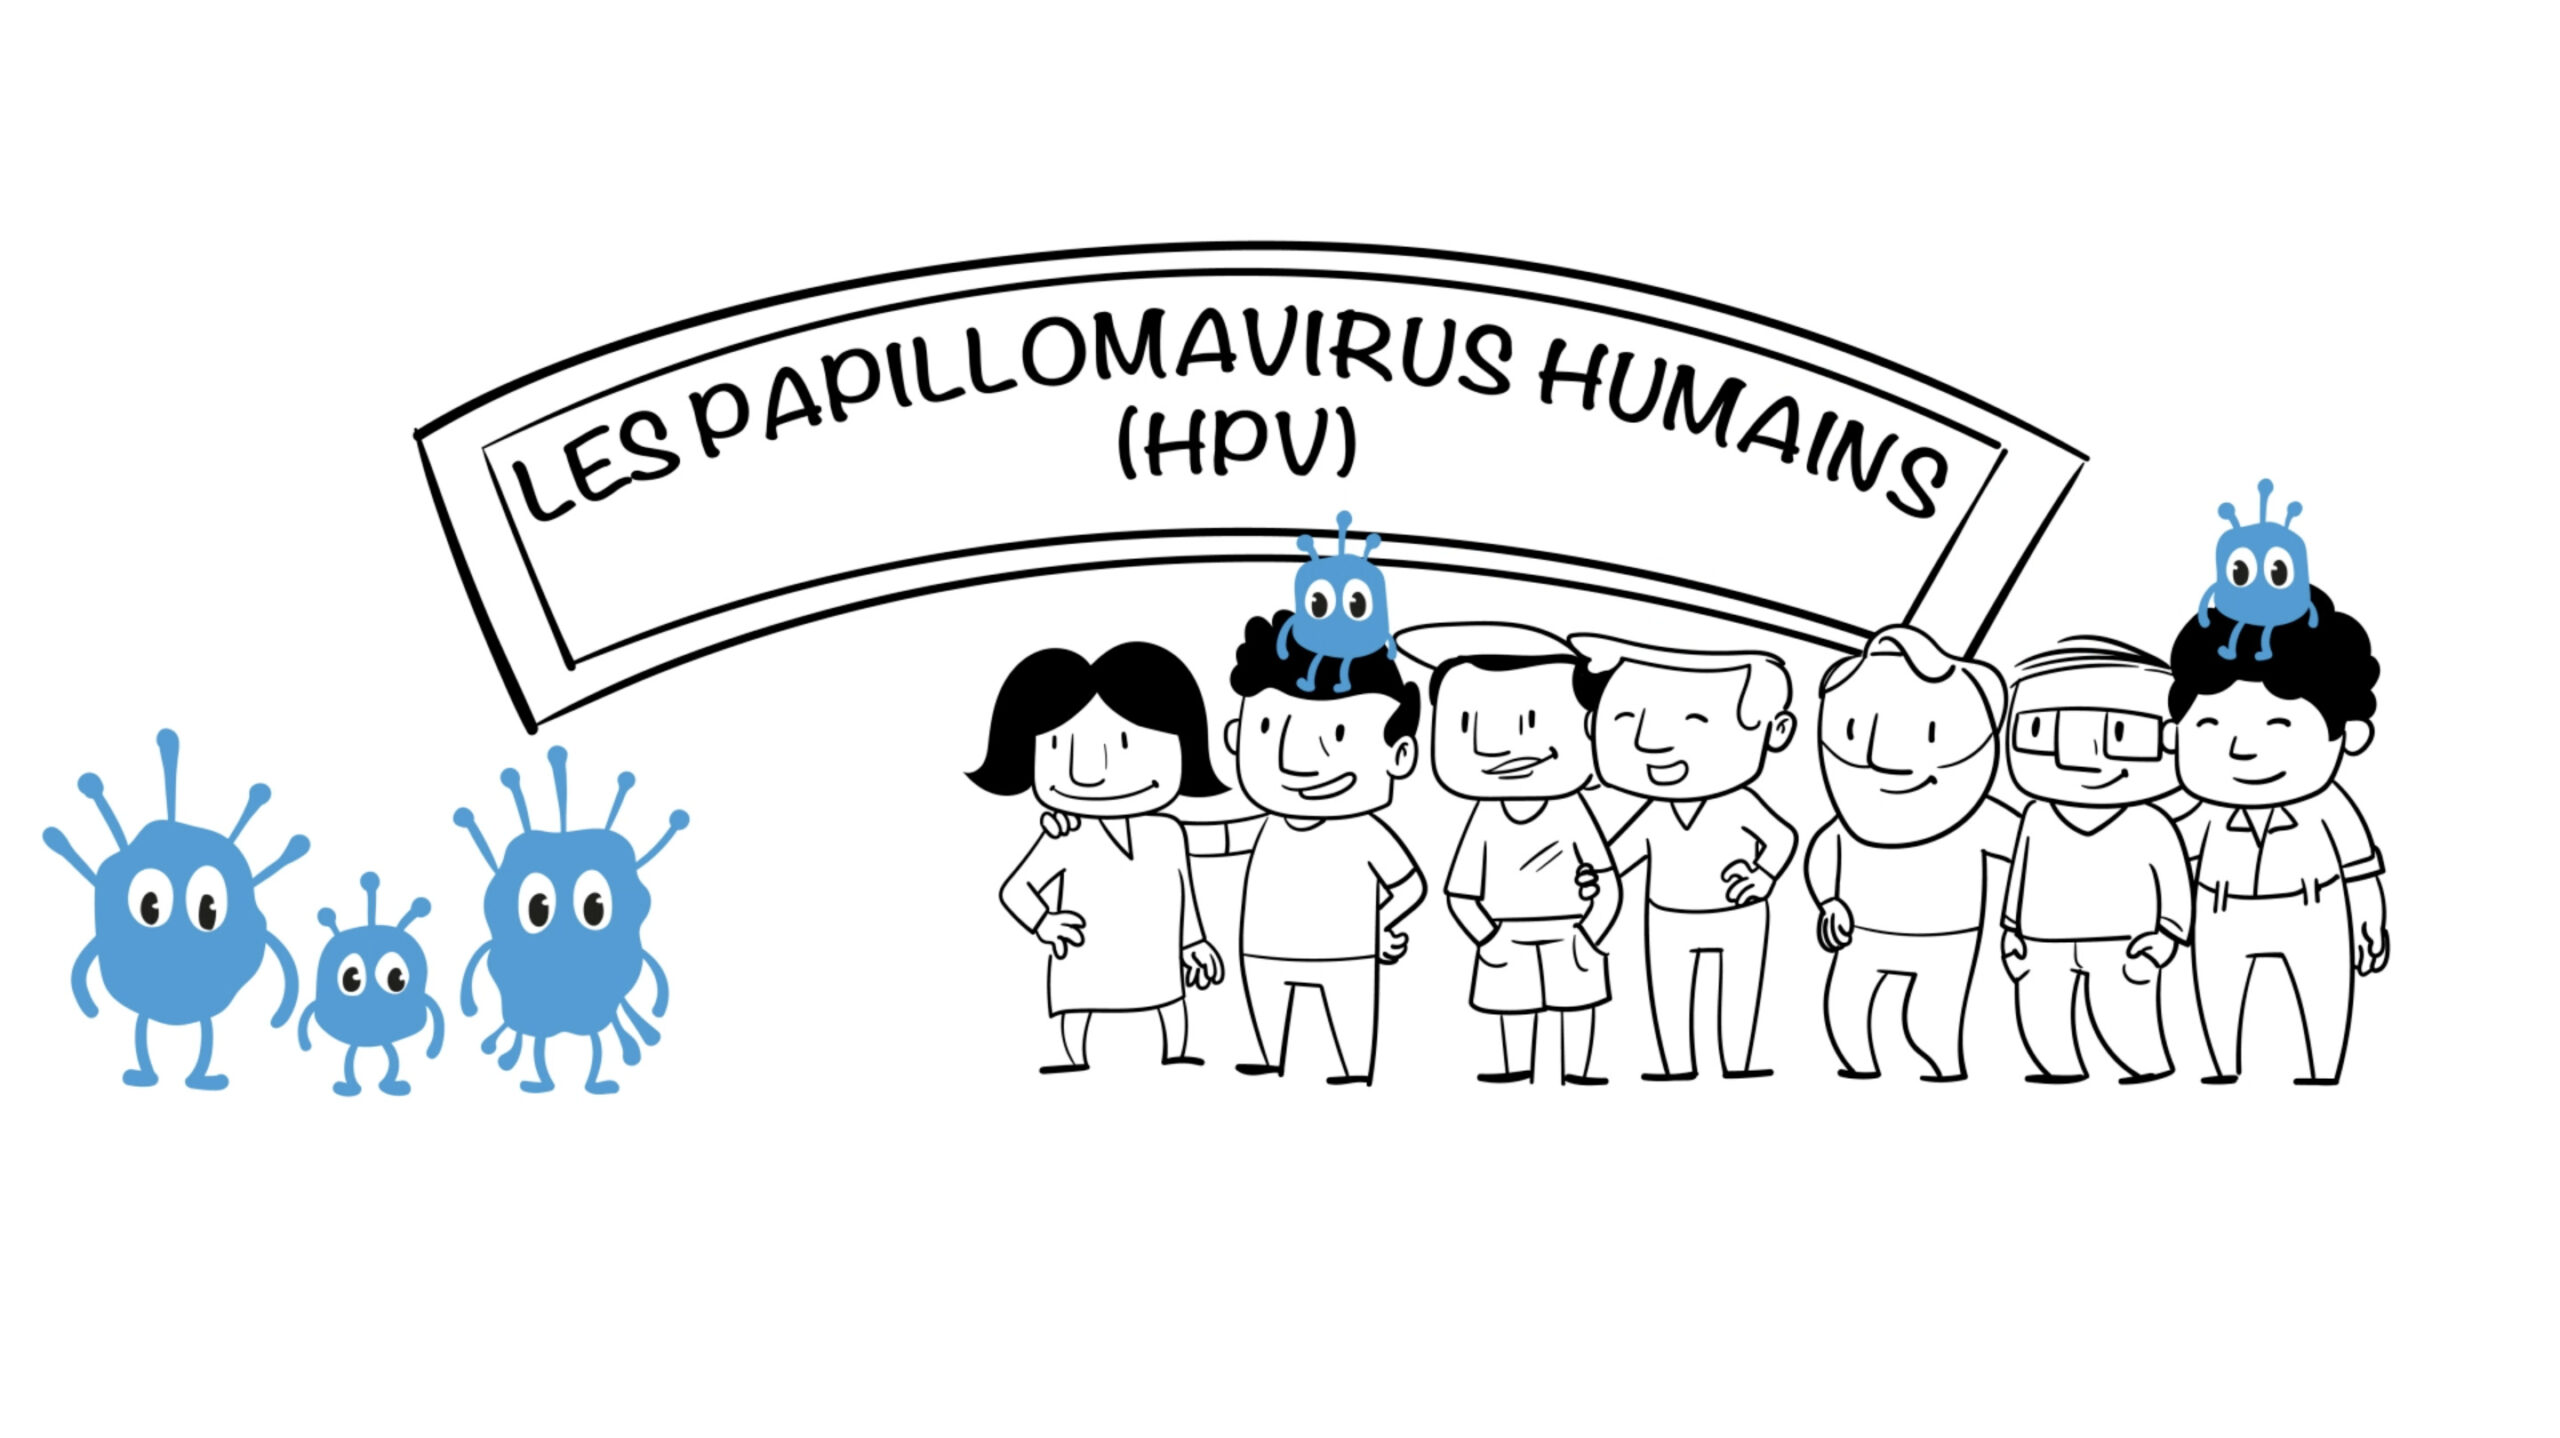 HPV papillomavirus